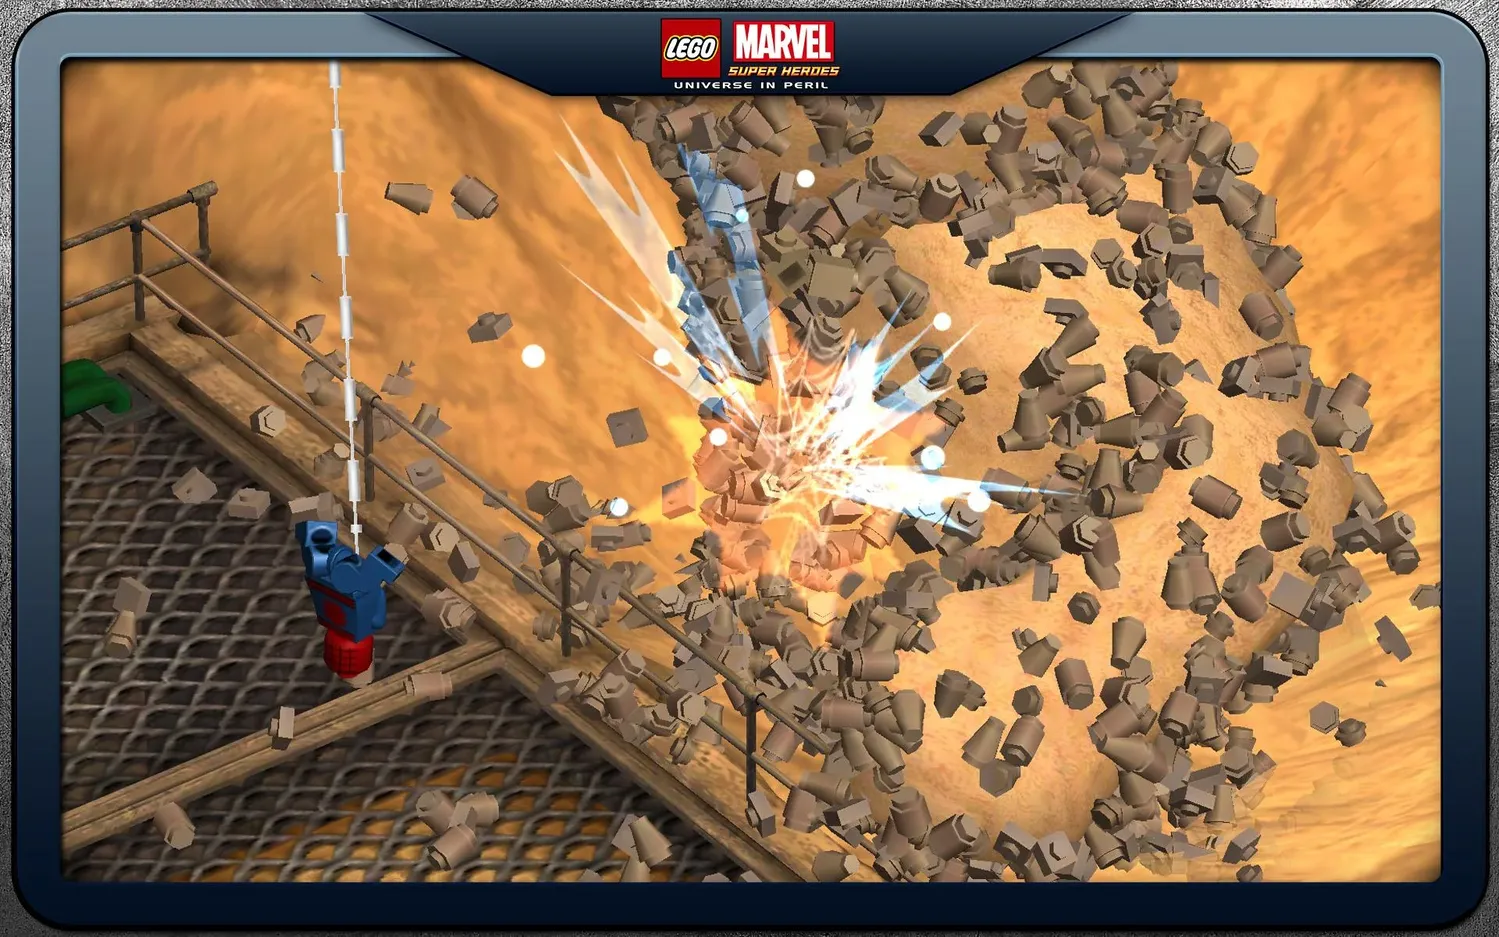 Download LEGO Marvel Super Heroes 2.0.1.27 MOD APK